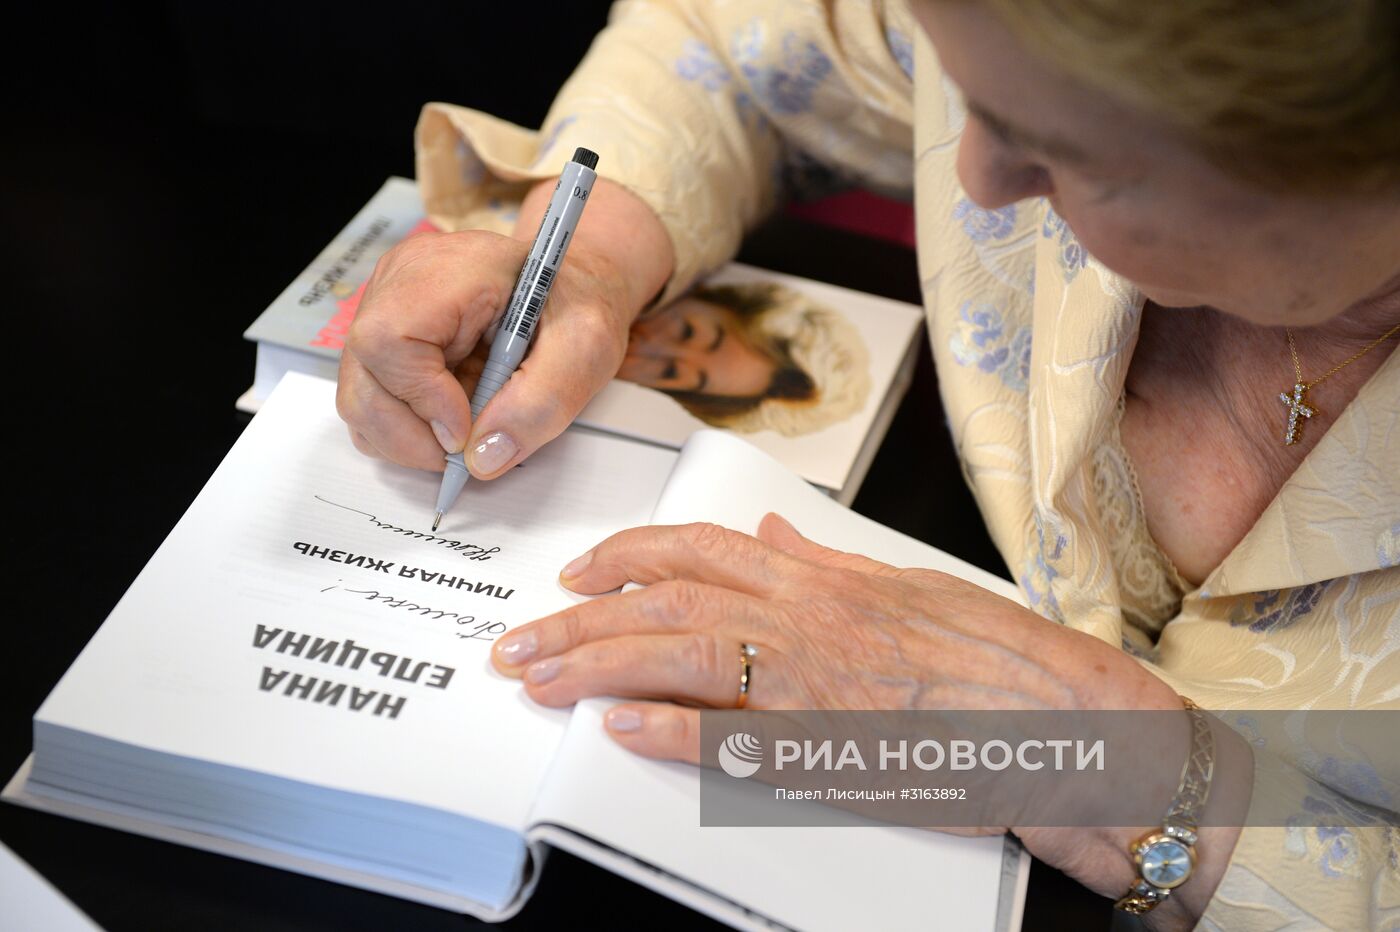 Презентация книги Н. Ельциной "Личная жизнь" в Екатеринбурге